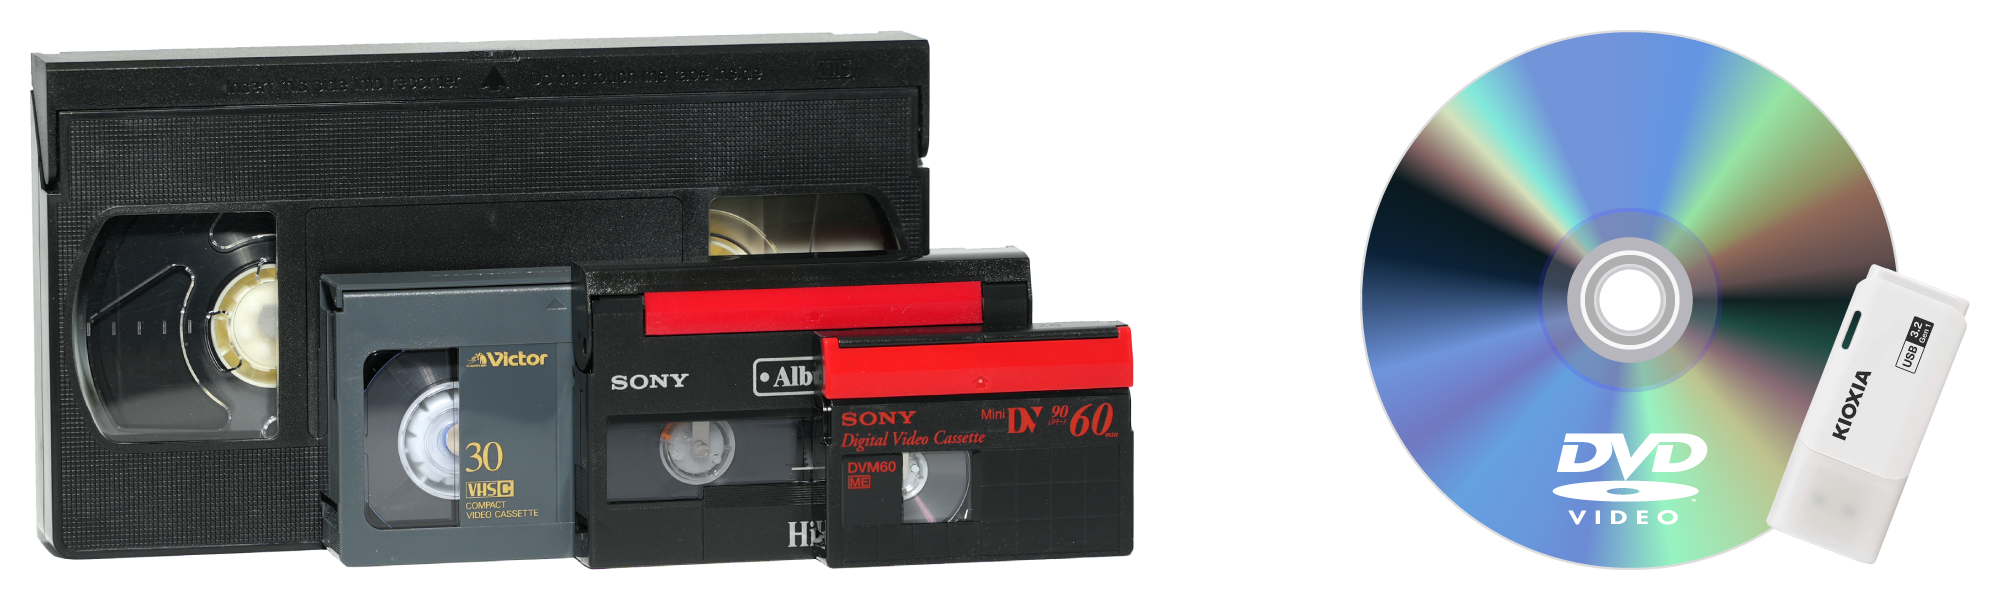 ビデオテープをDVDと動画ファイルにダビングイメージ